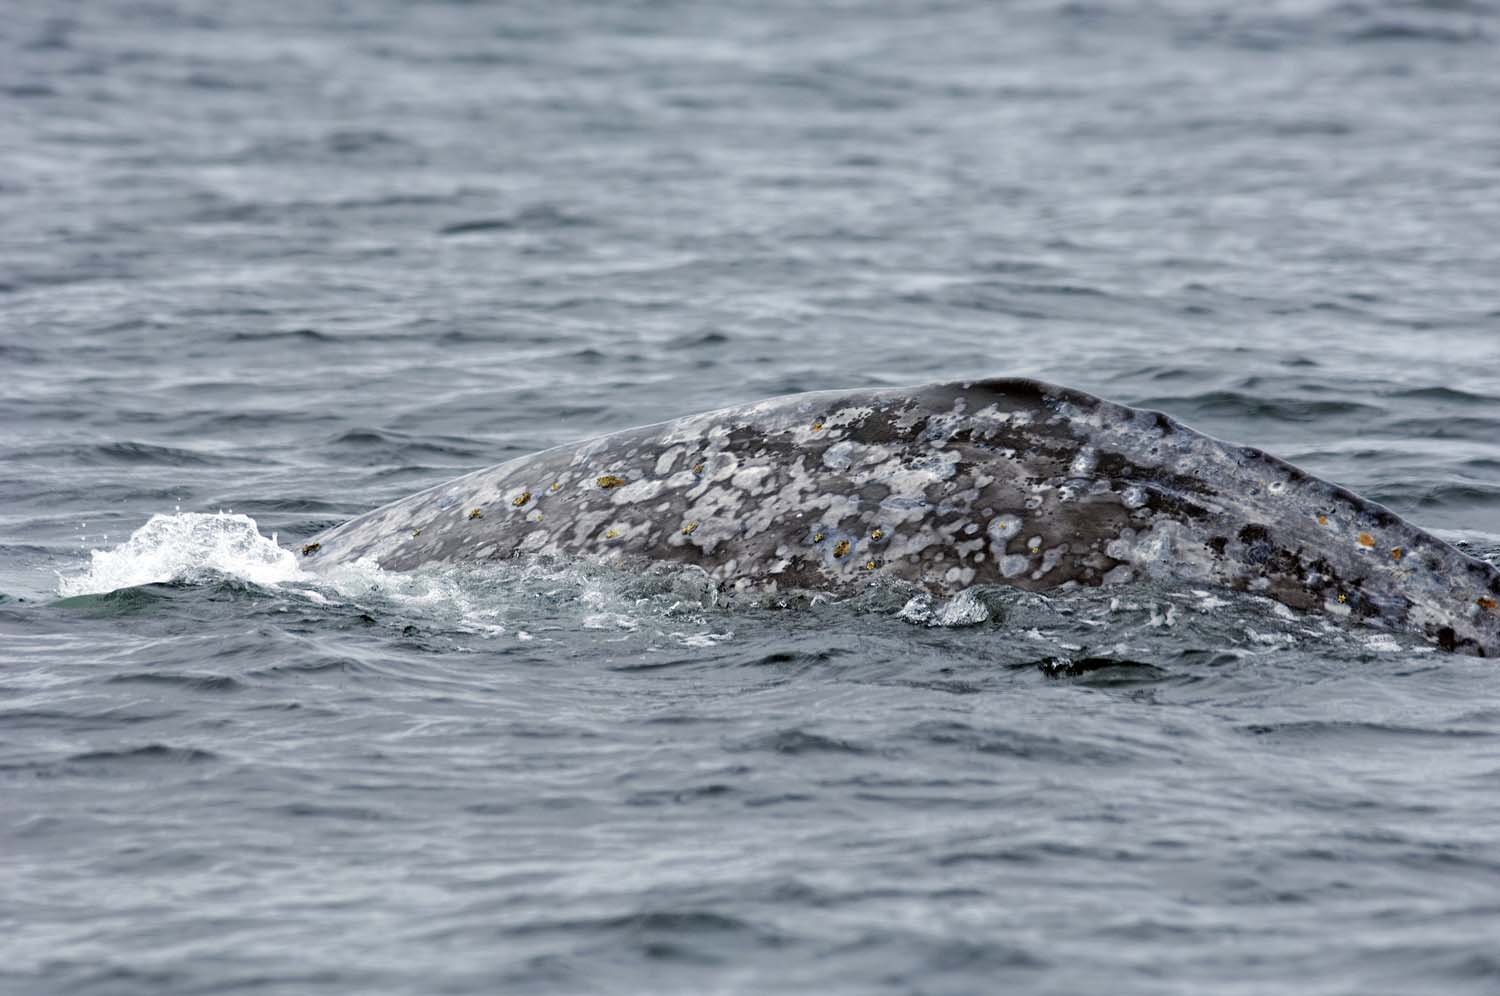 Grey whale migration study Vancouver Aquarium